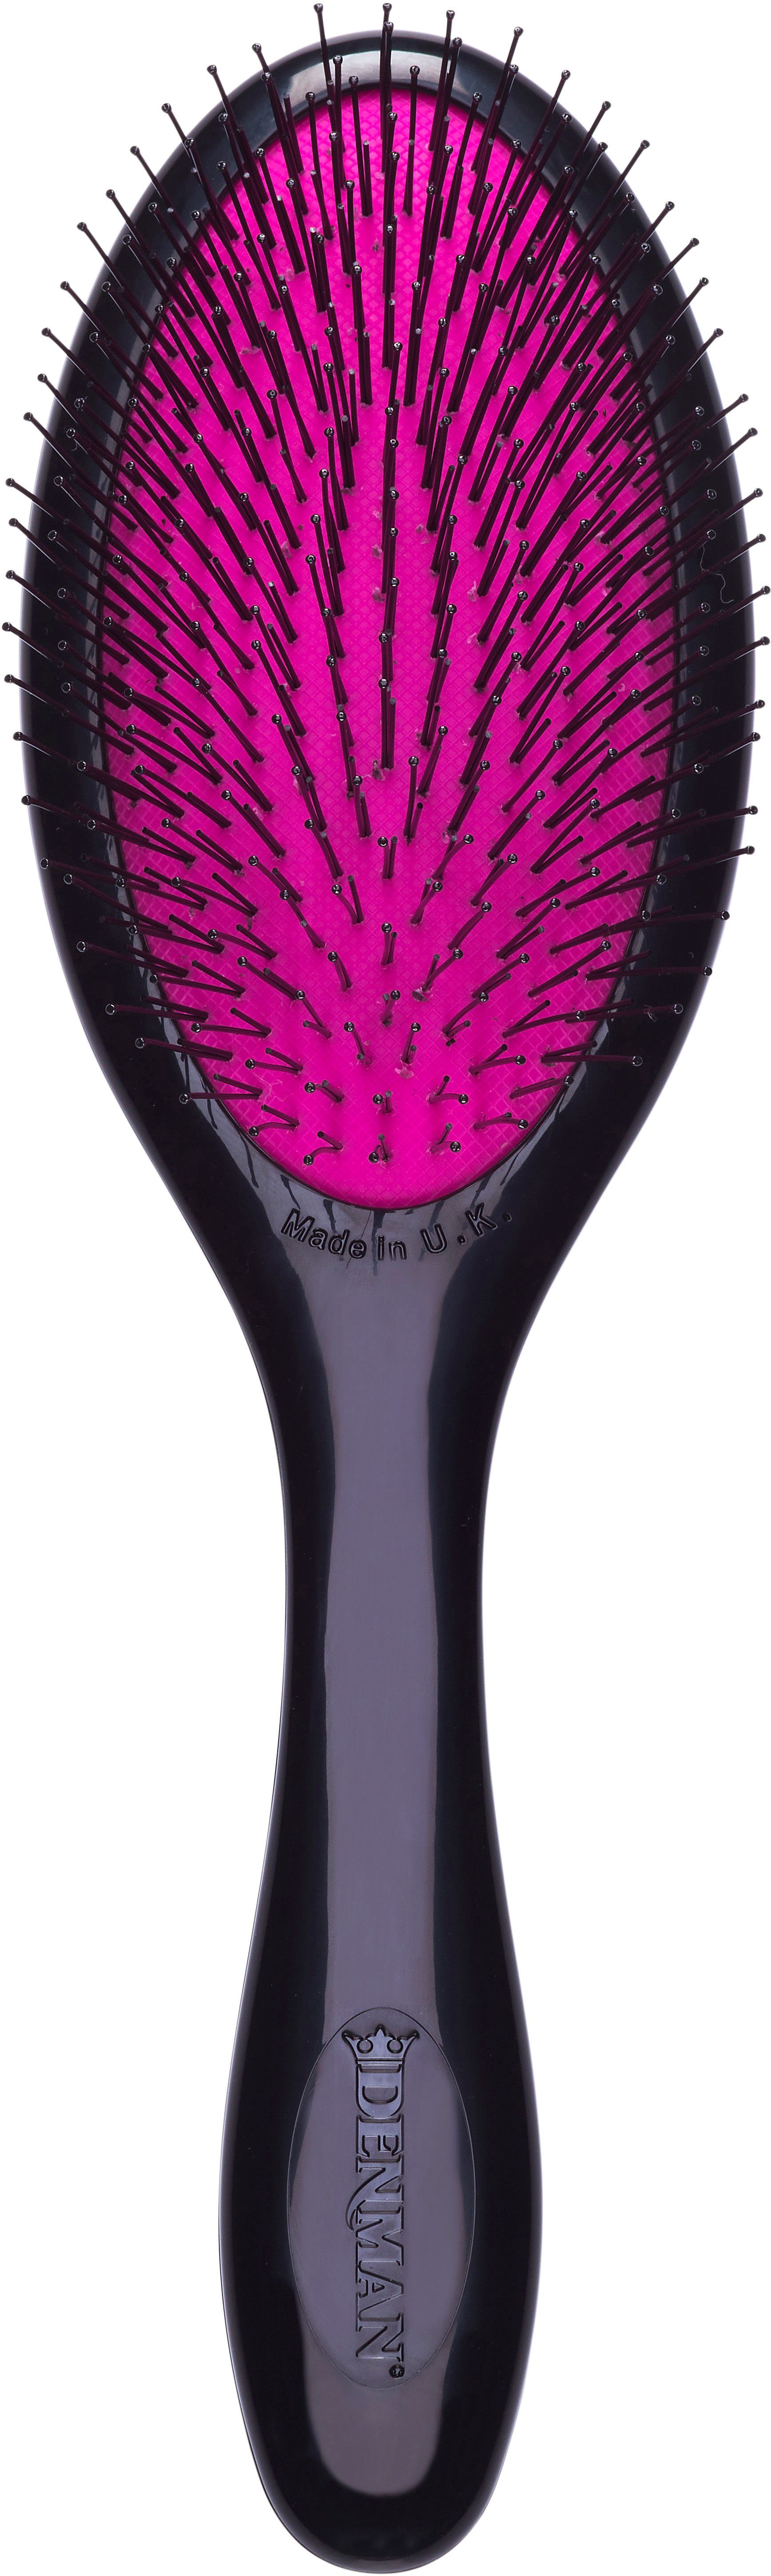 Tangle feines für Kinderhaar Gentle, und Haarbürste speziell D93M Haar Tamer schwarz-pink Entwirrungsbürste DENMAN